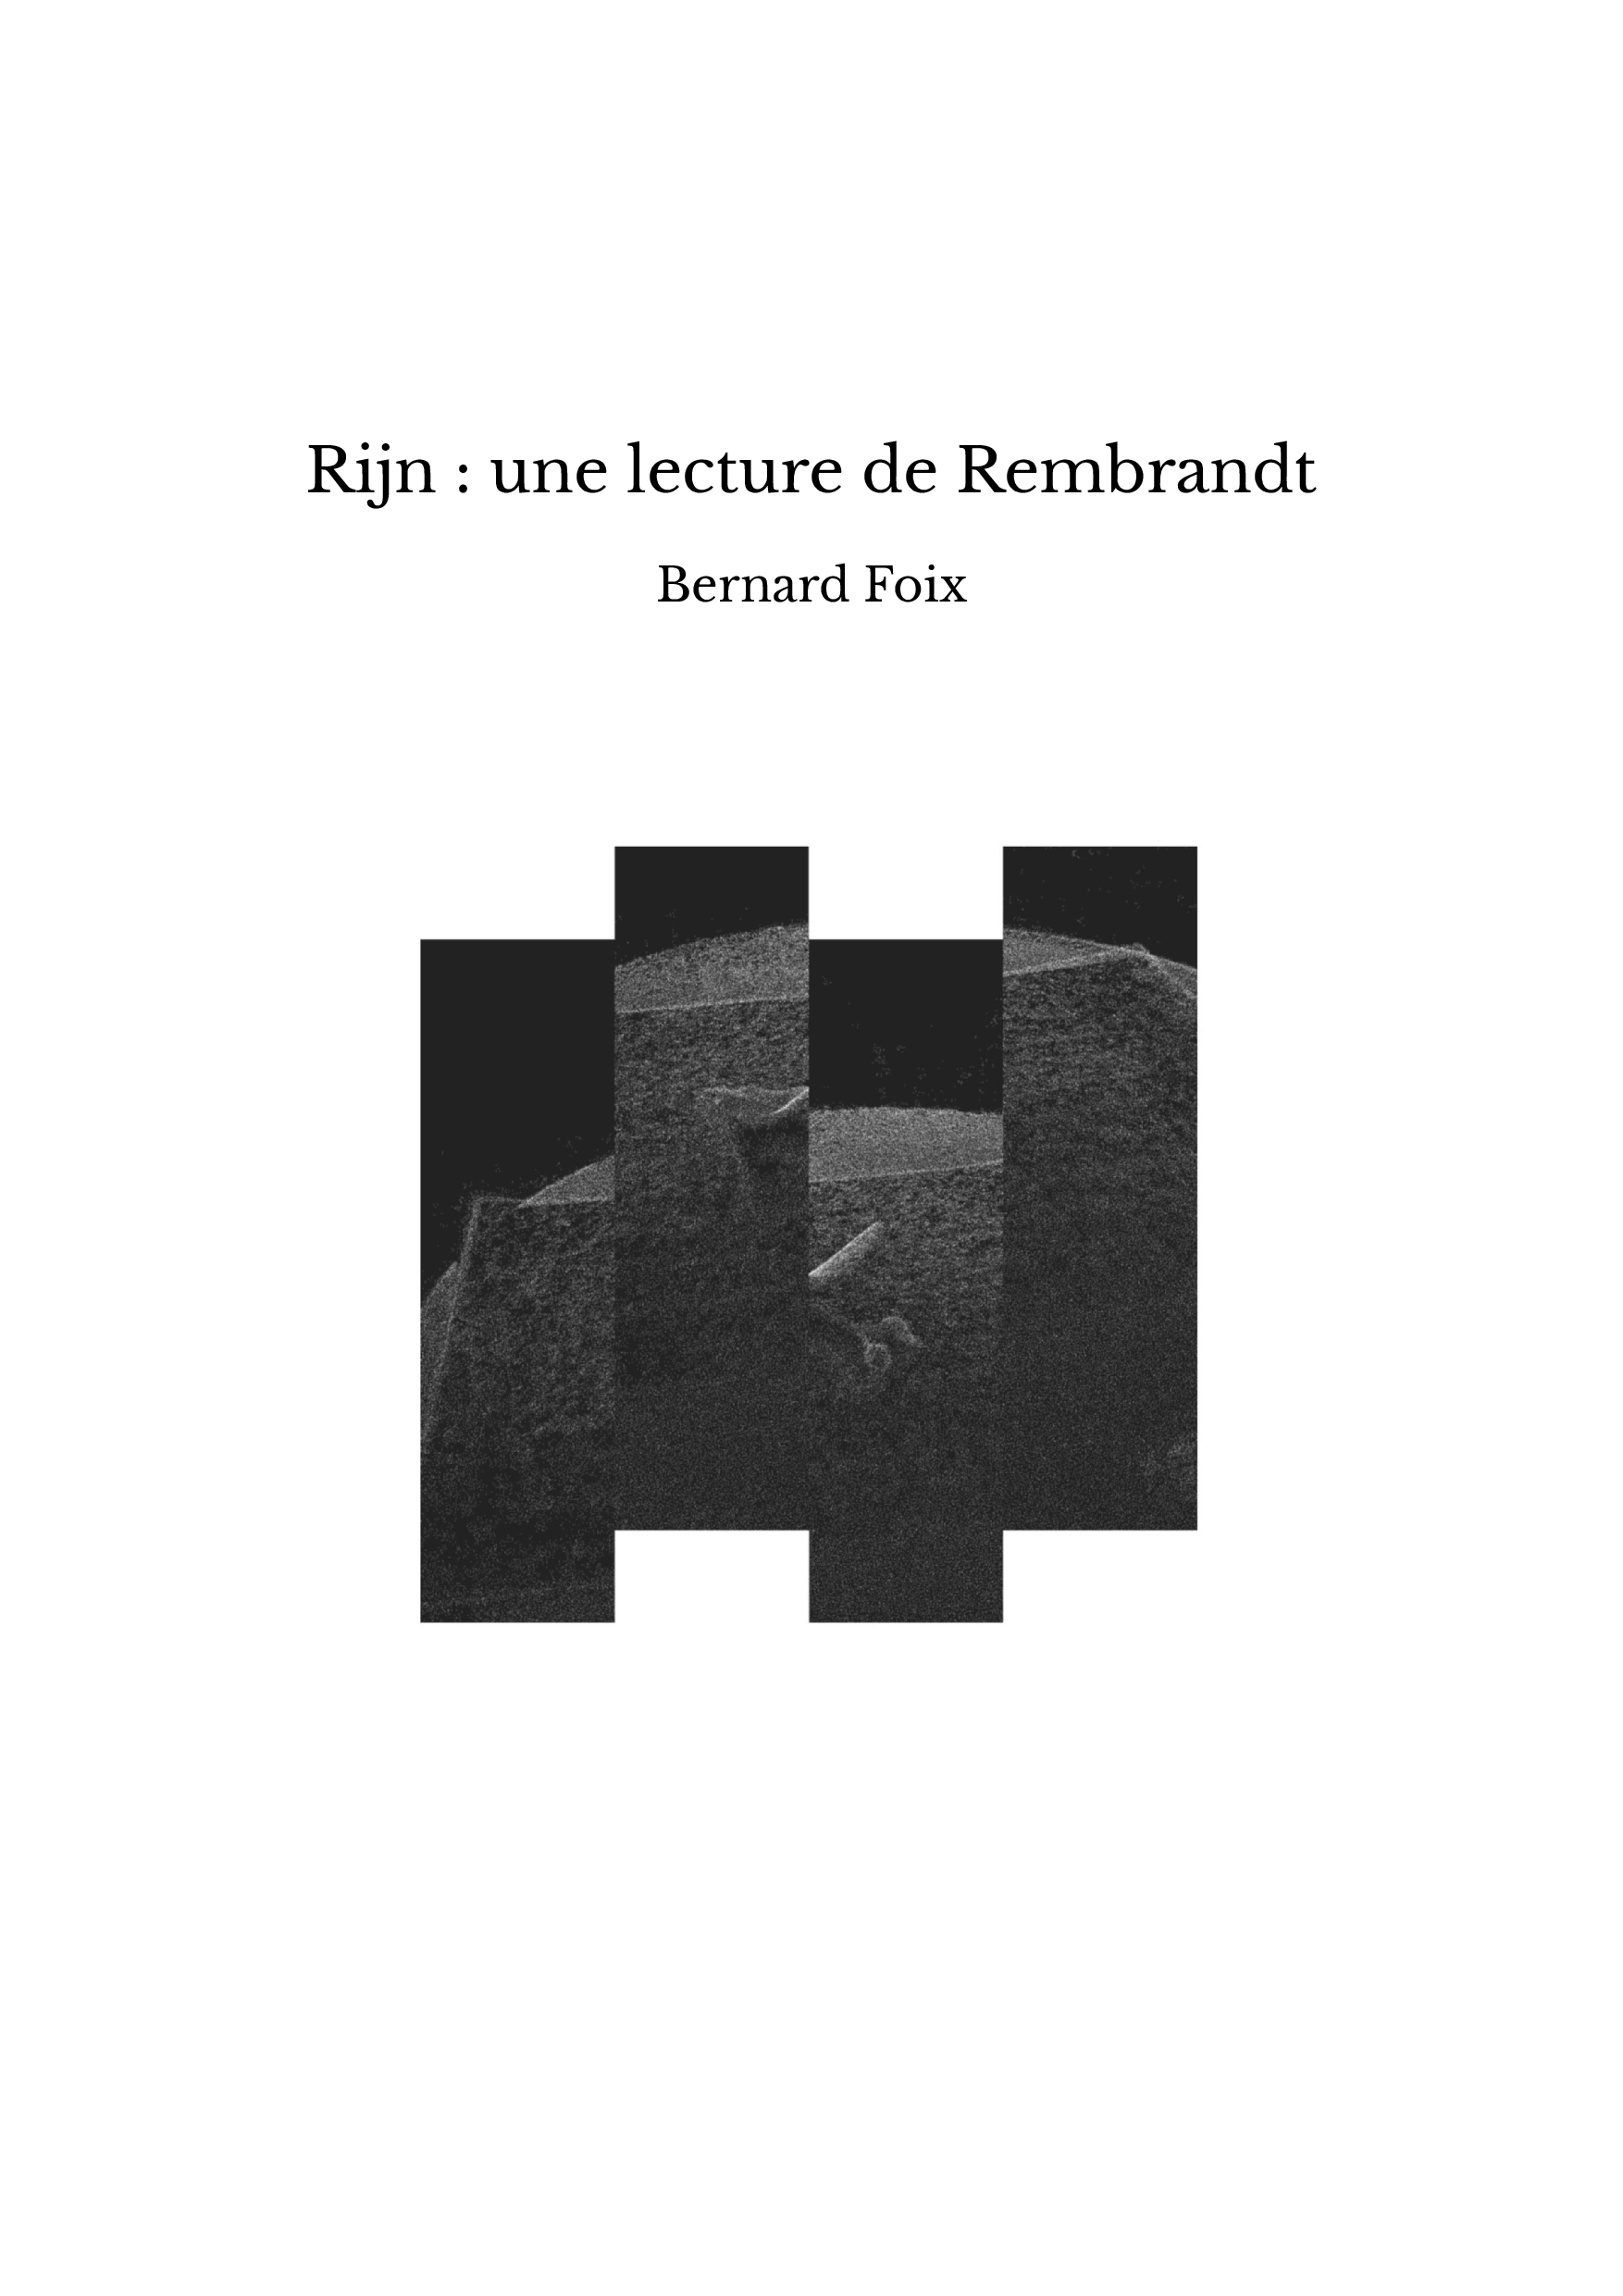 Rijn : une lecture de Rembrandt